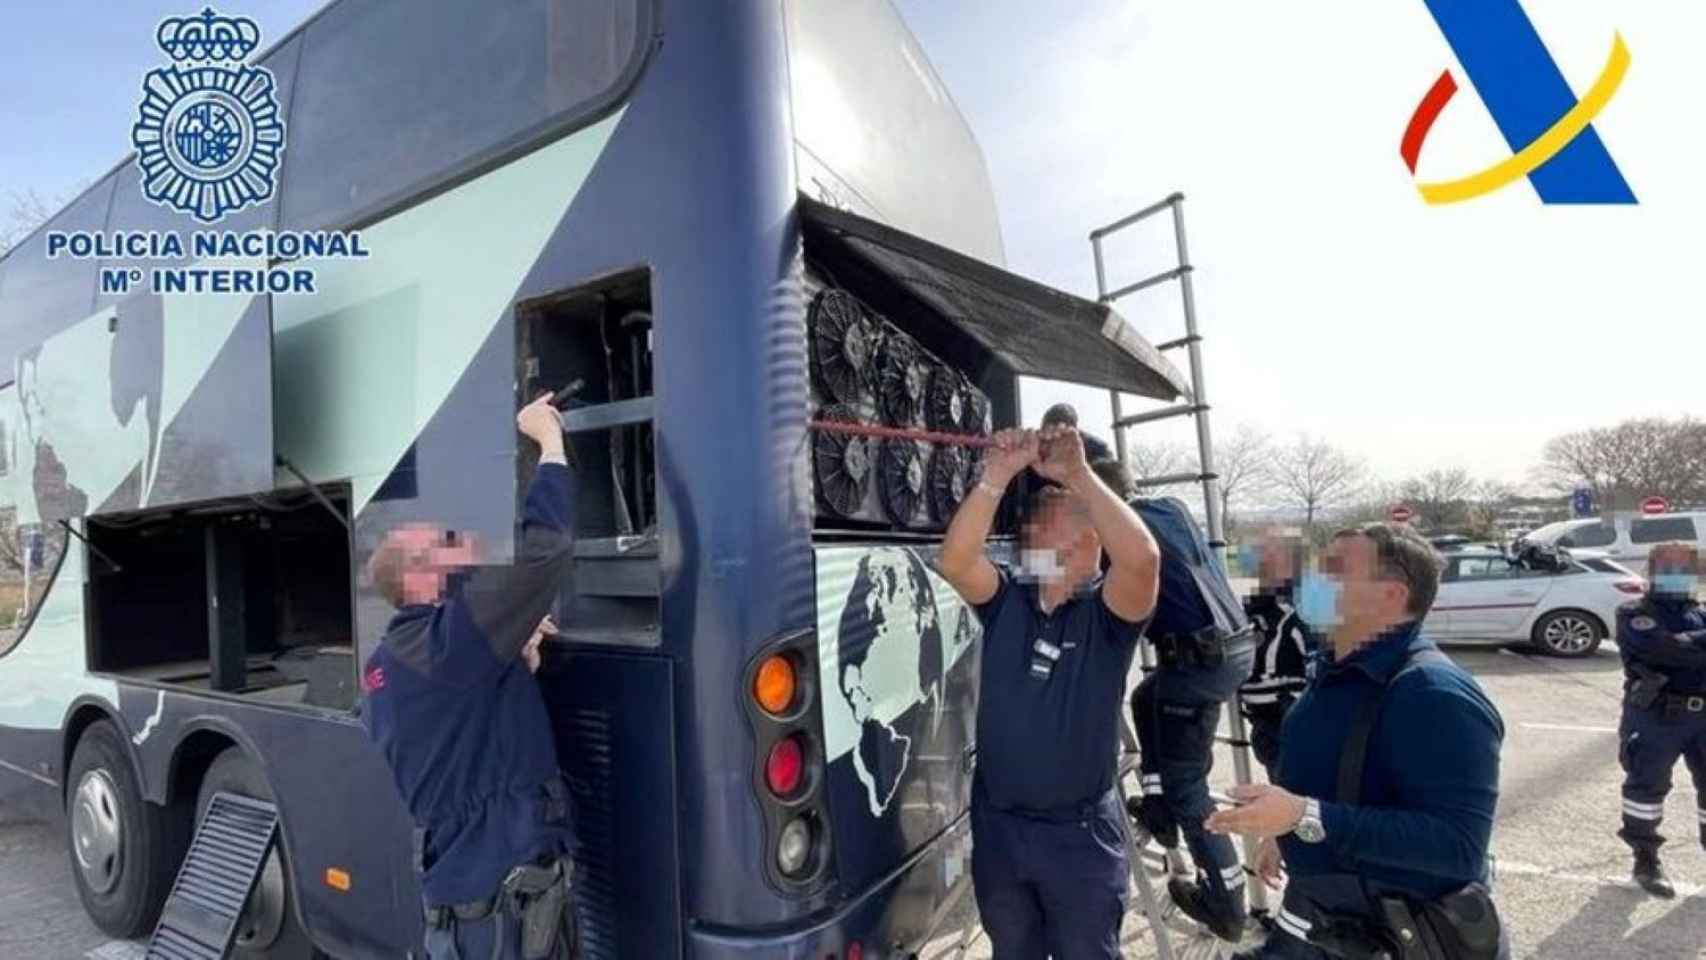 El autobús interceptado en Lyon por la policía / POLICÍA NACIONAL